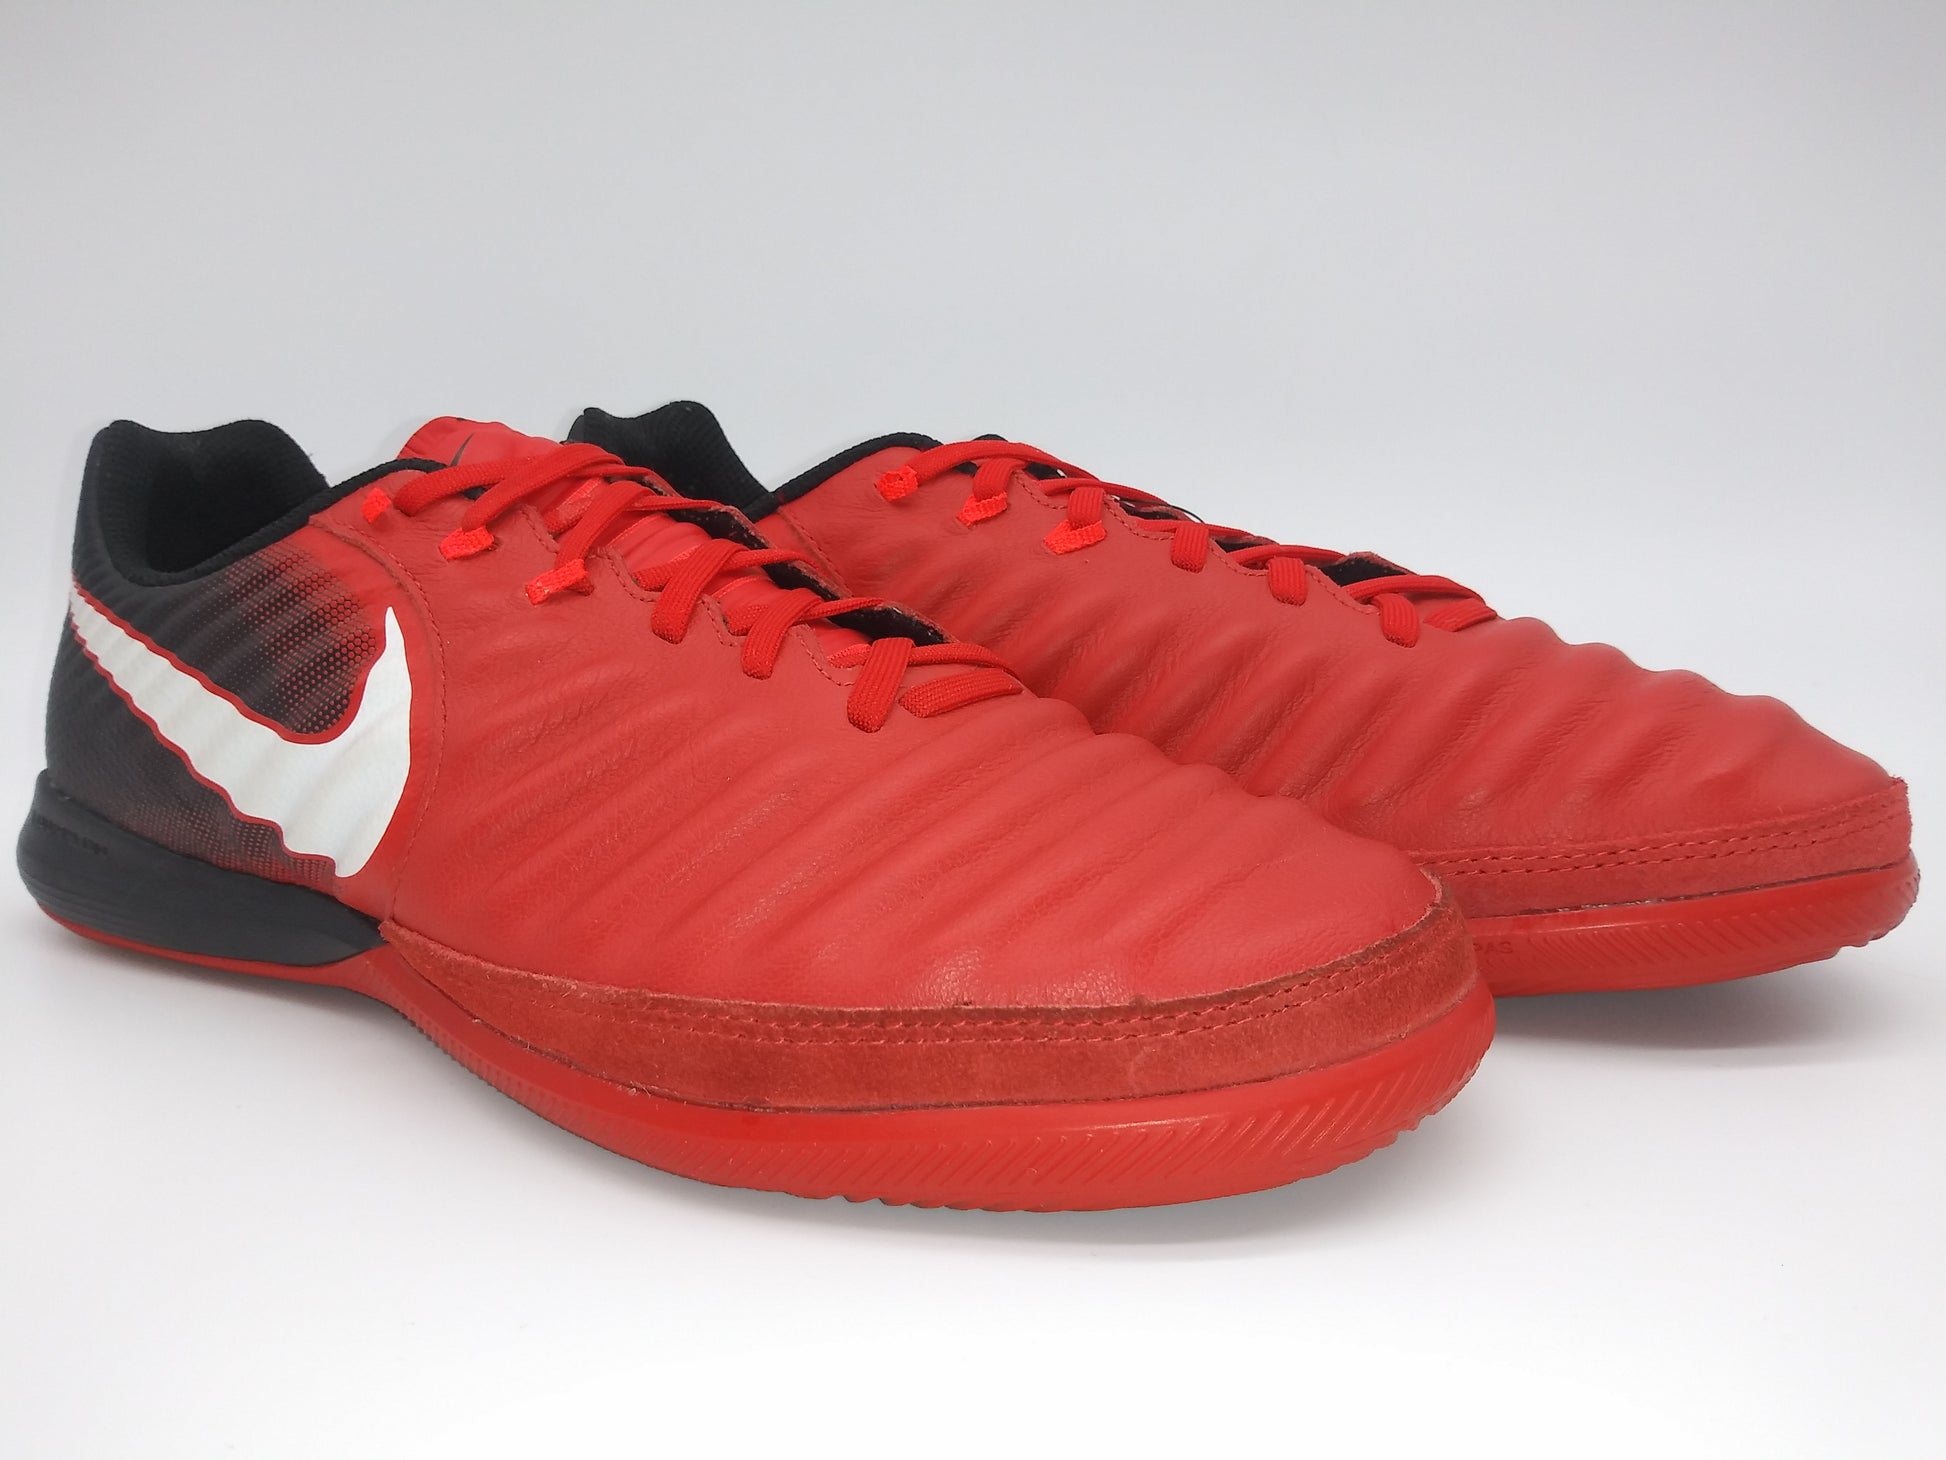 Nike Finale IC Red Villegas Footwear